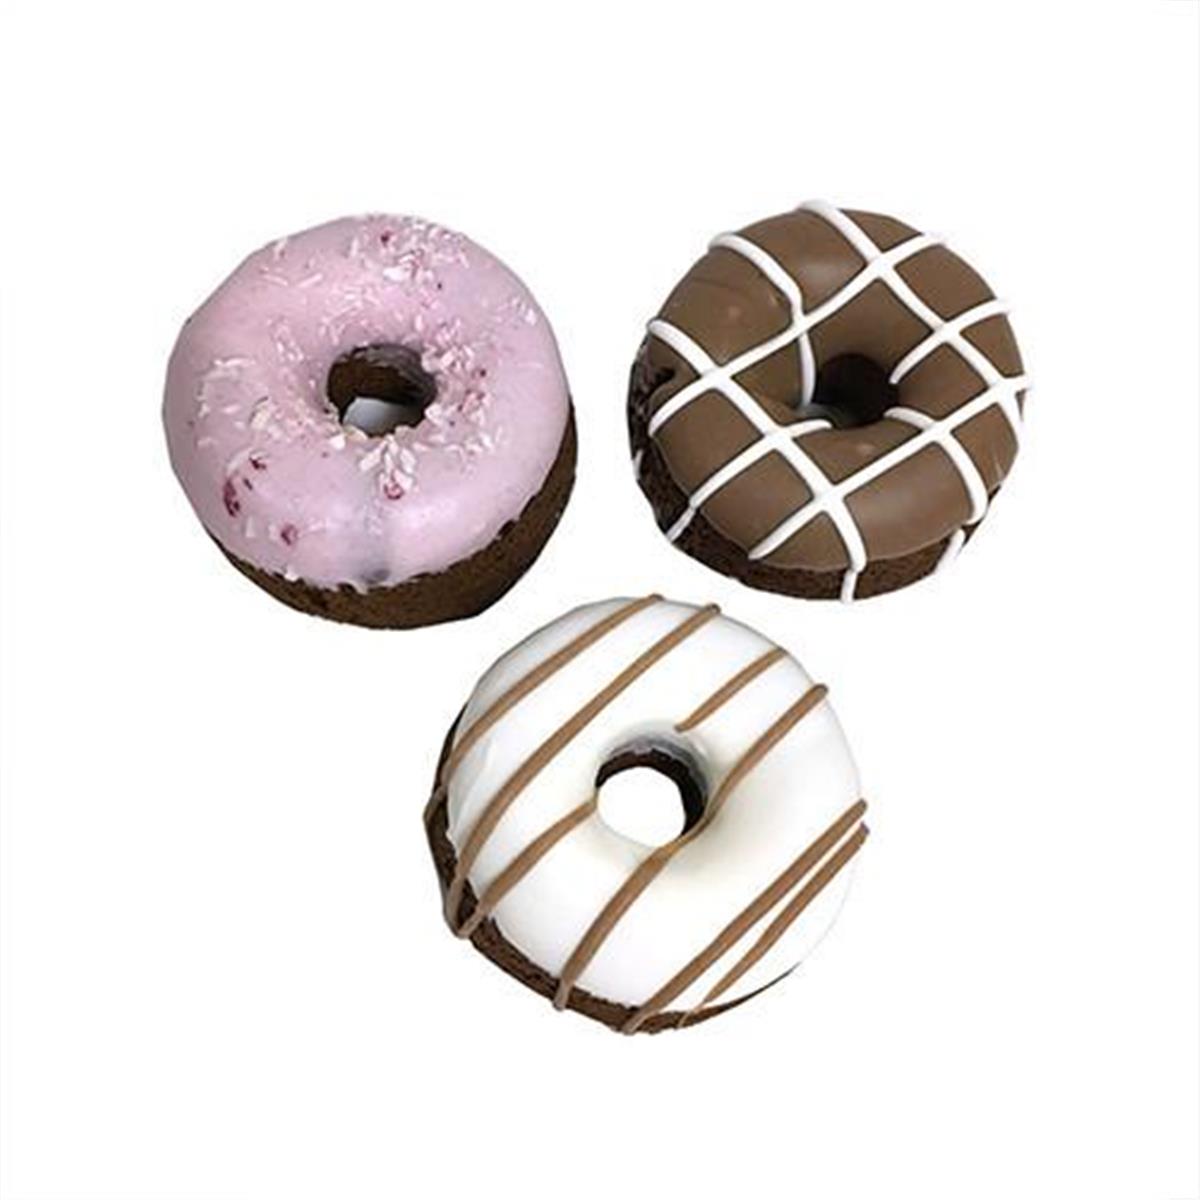 Bkmido 1.5 In. Mini Donuts - Case Of 12